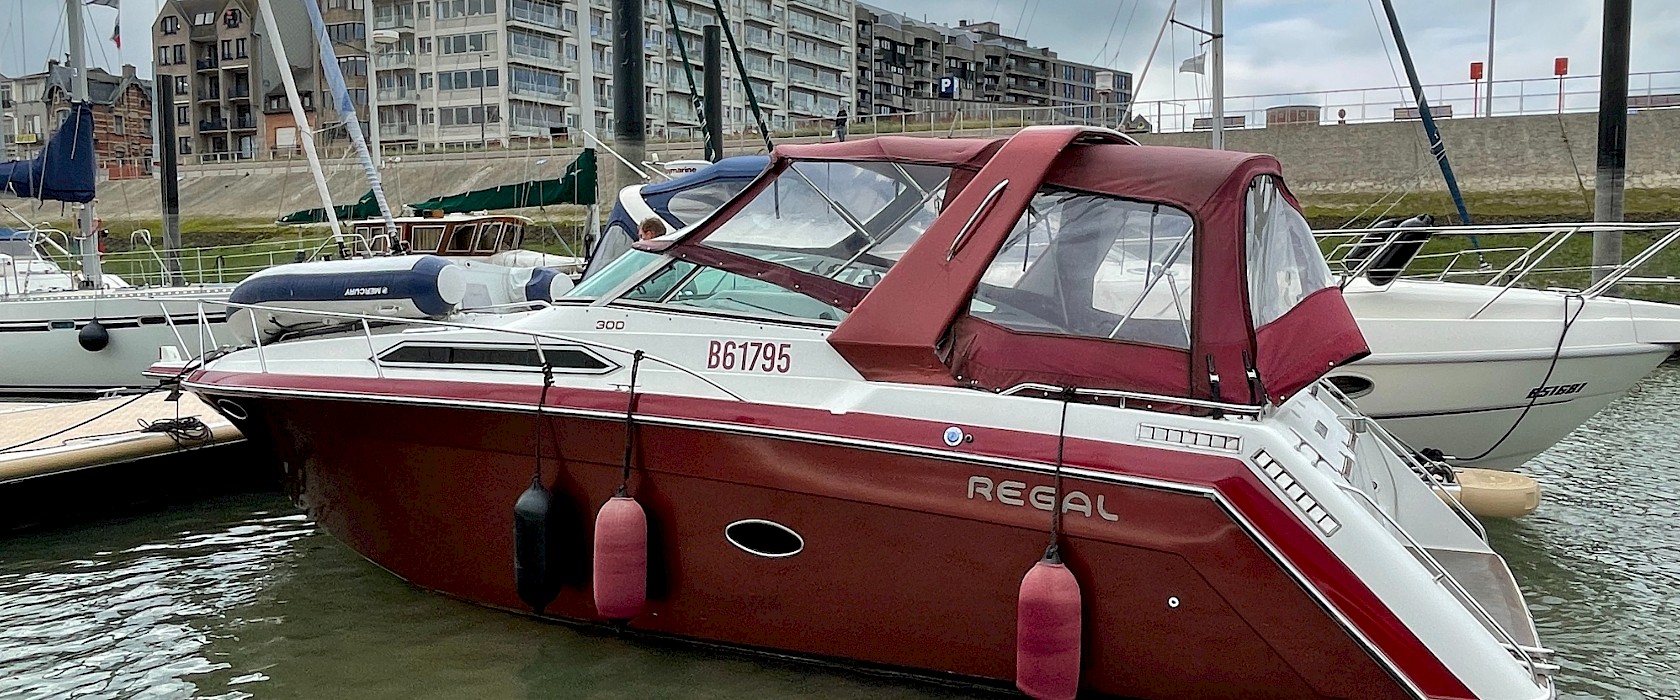 Huysman Yacht bootverzekeringen